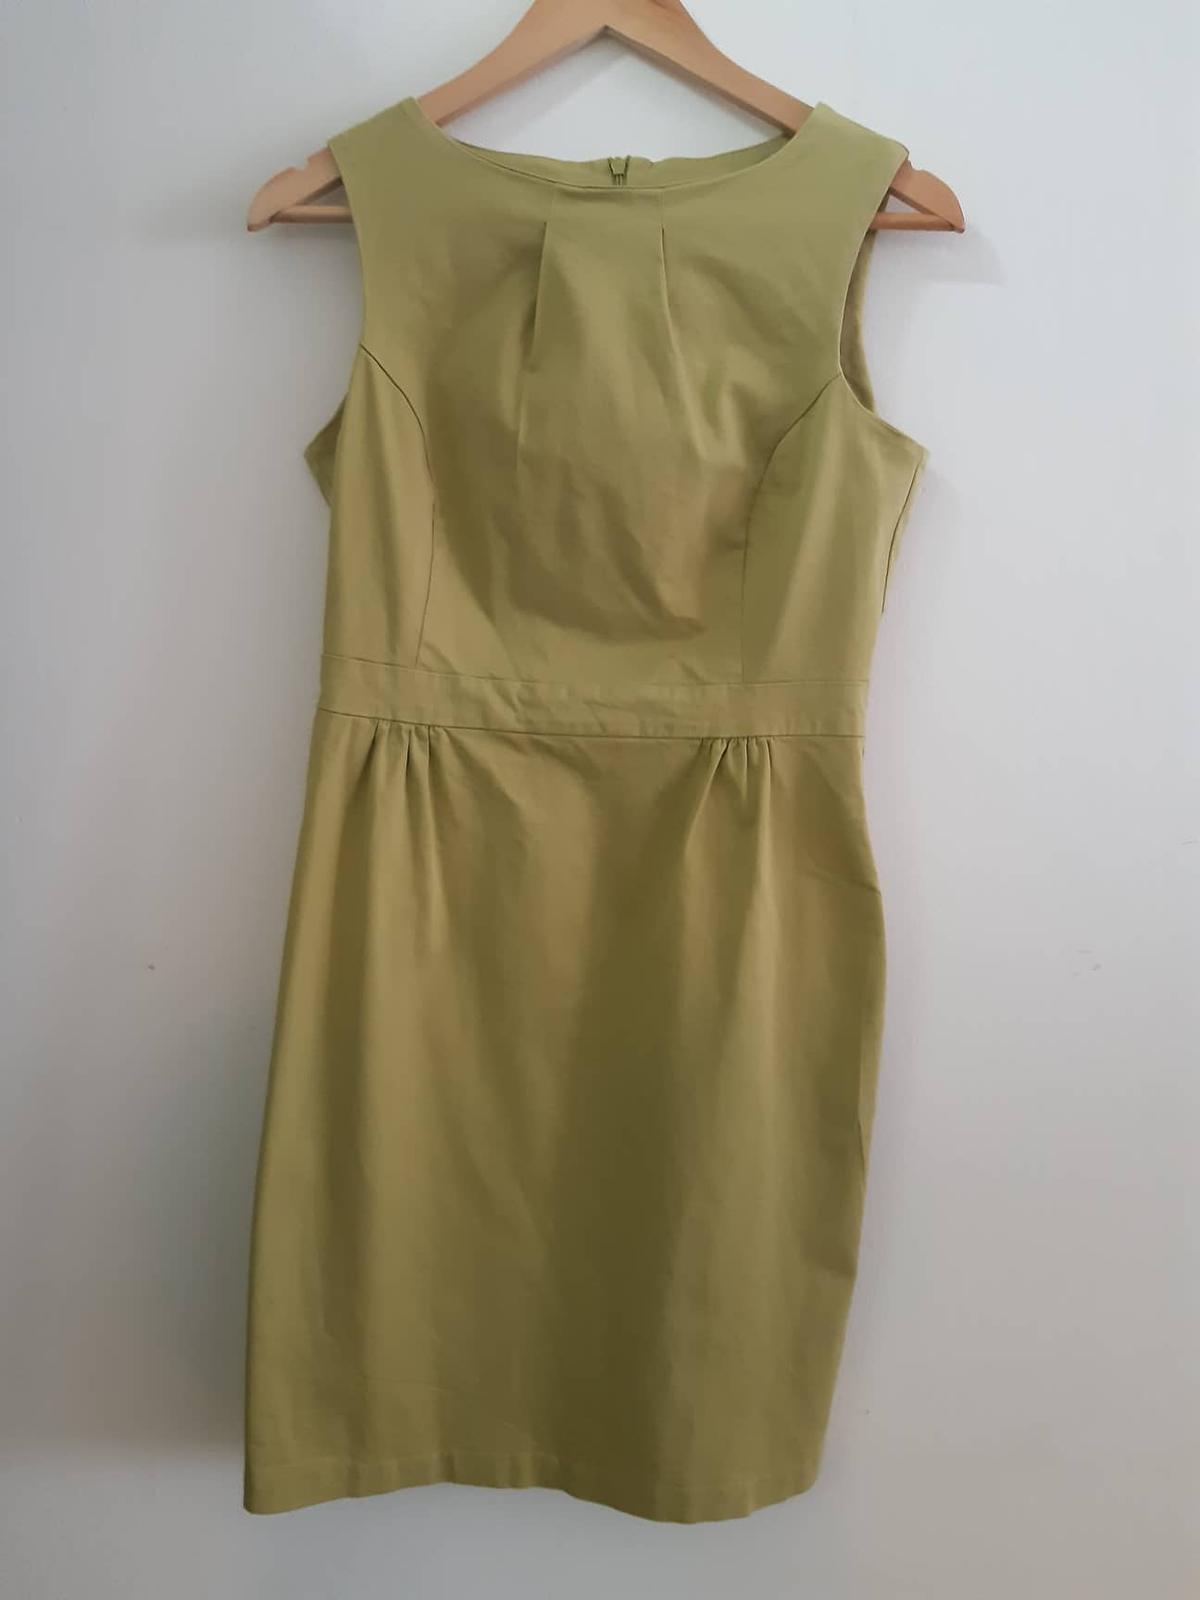 Zelené pouzdrové šaty - Obrázek č. 1